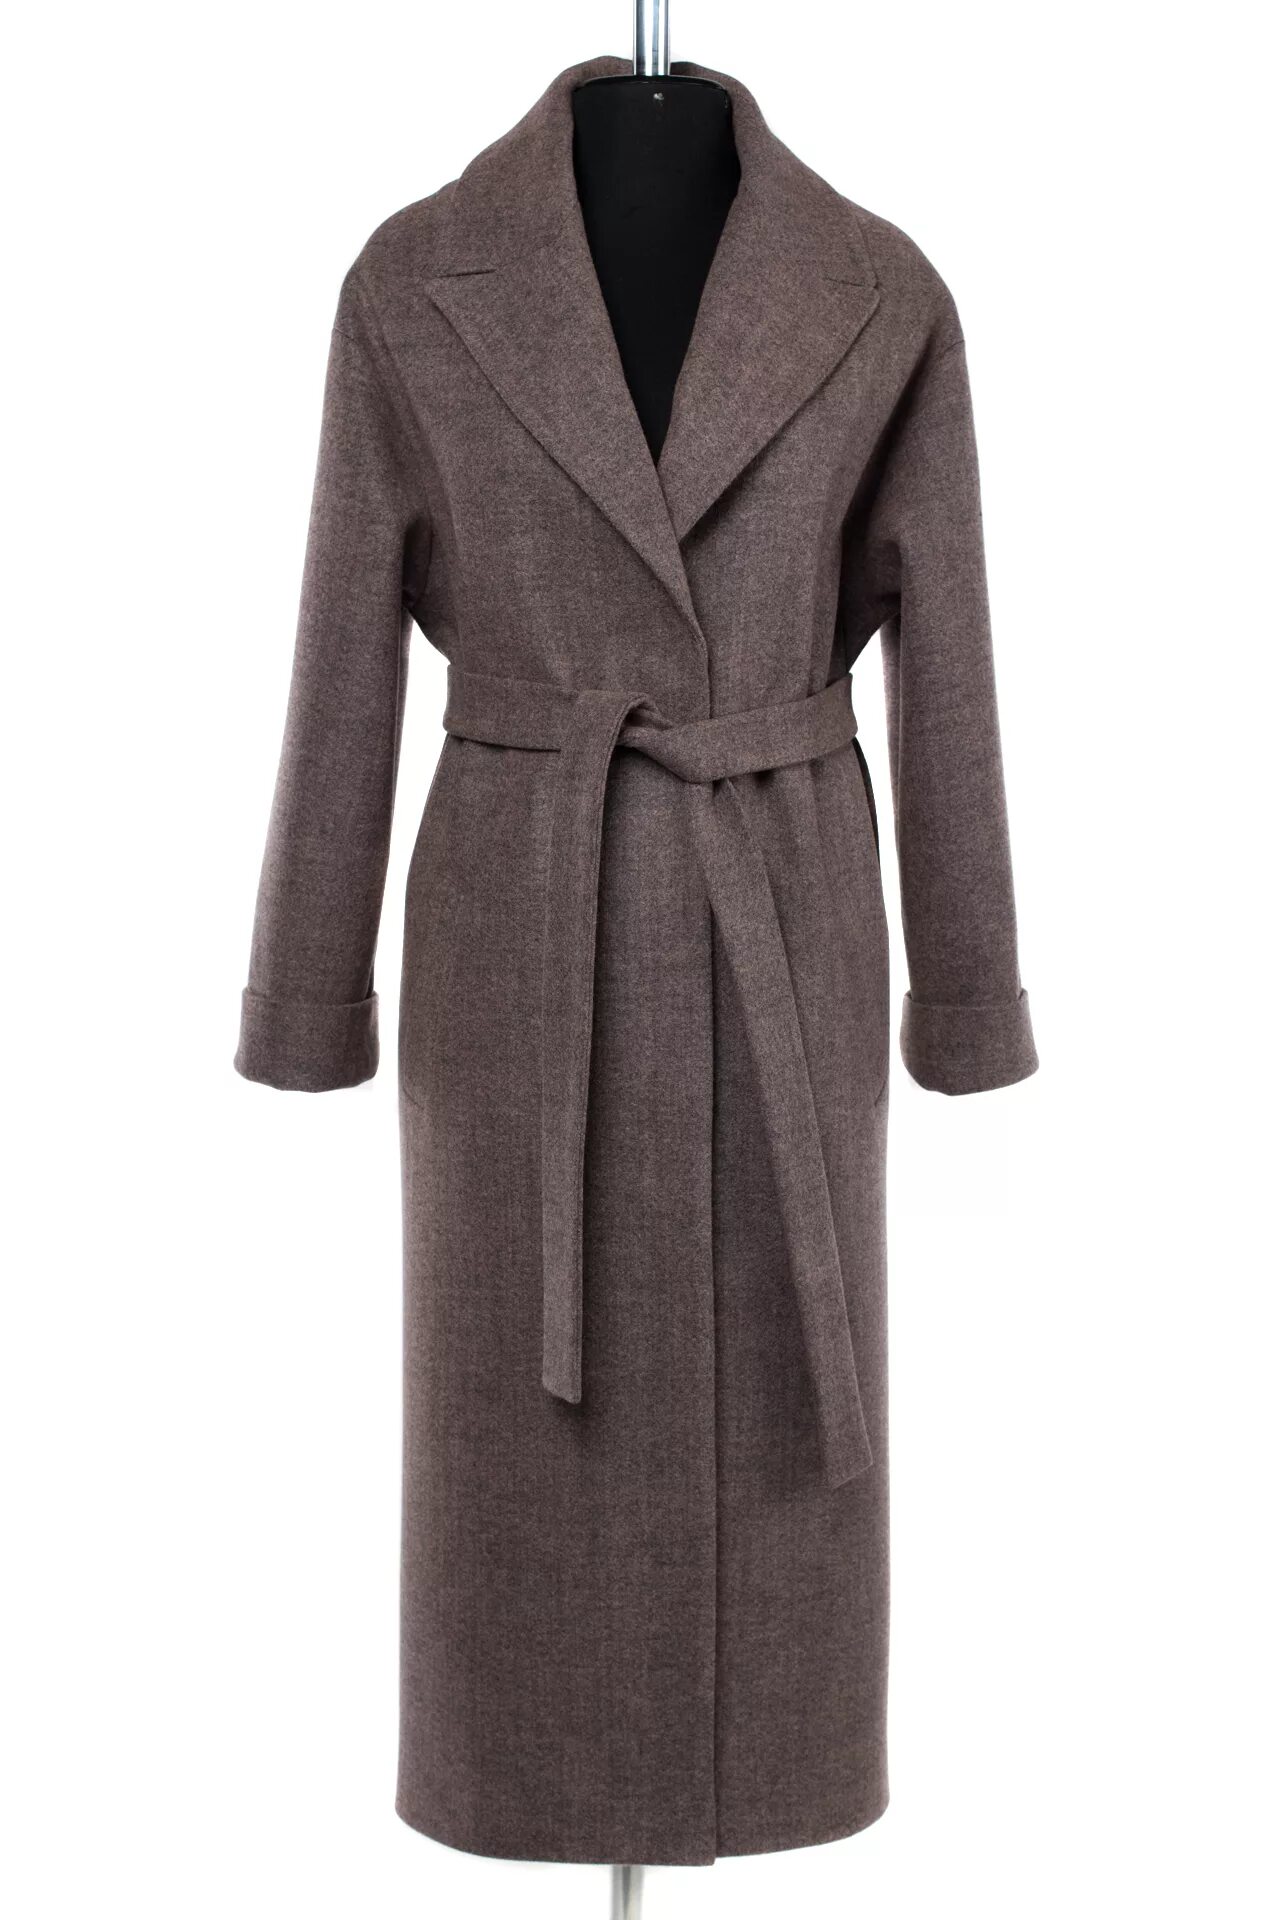 Аэтг пальто. Аэтг пальто женское демисезонное модель а-860. Пальто аэтг женское. Пальто с поясом женское аэтг.